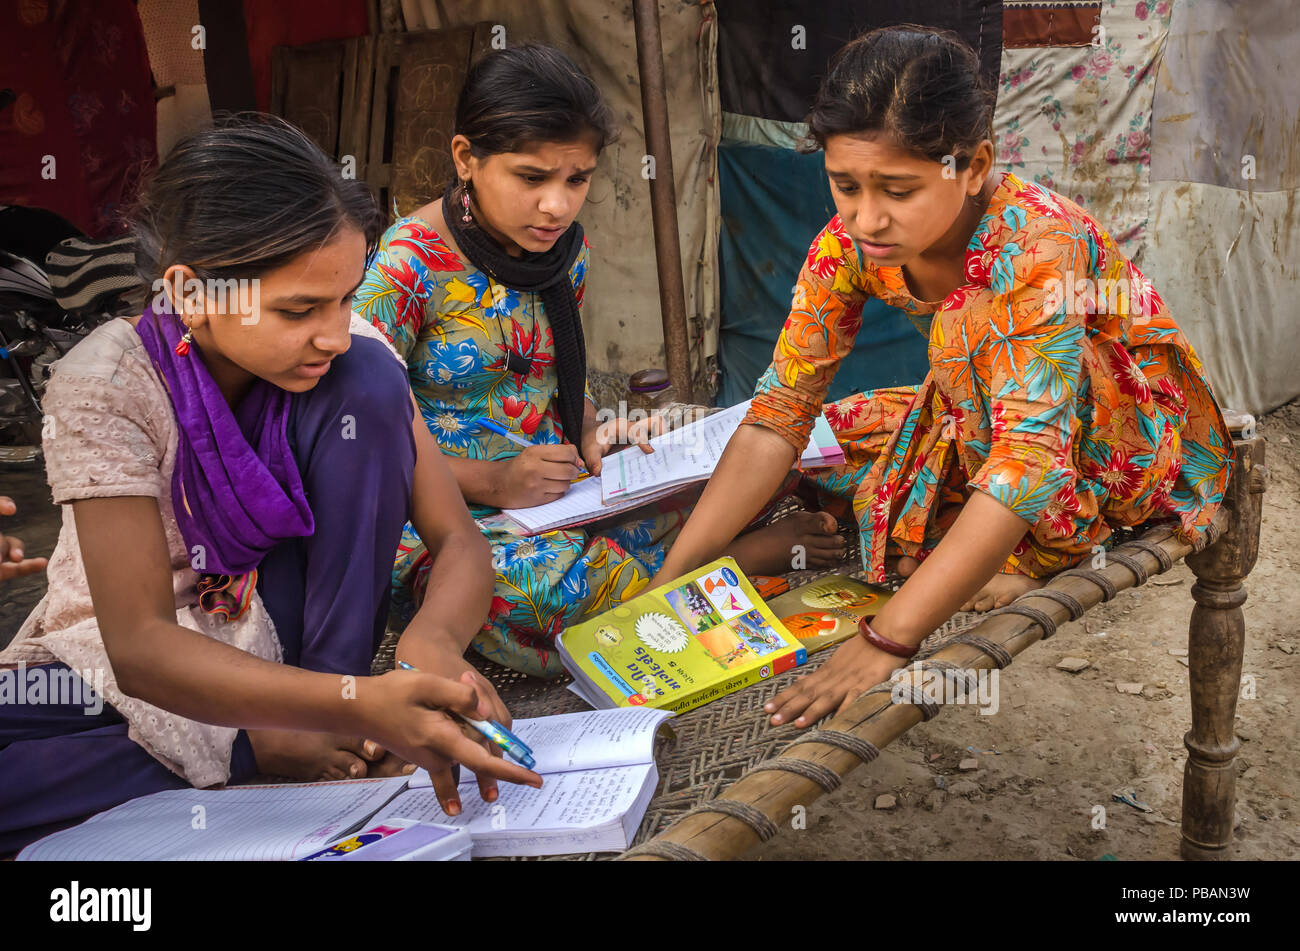 AHMEDABAD, INDE - Le 10 décembre 2017 : l'école de filles non identifié à l'origine ethnique Indien assis sur lit bébé fait ses devoirs avec les livres et les cahiers d'exercices. Banque D'Images